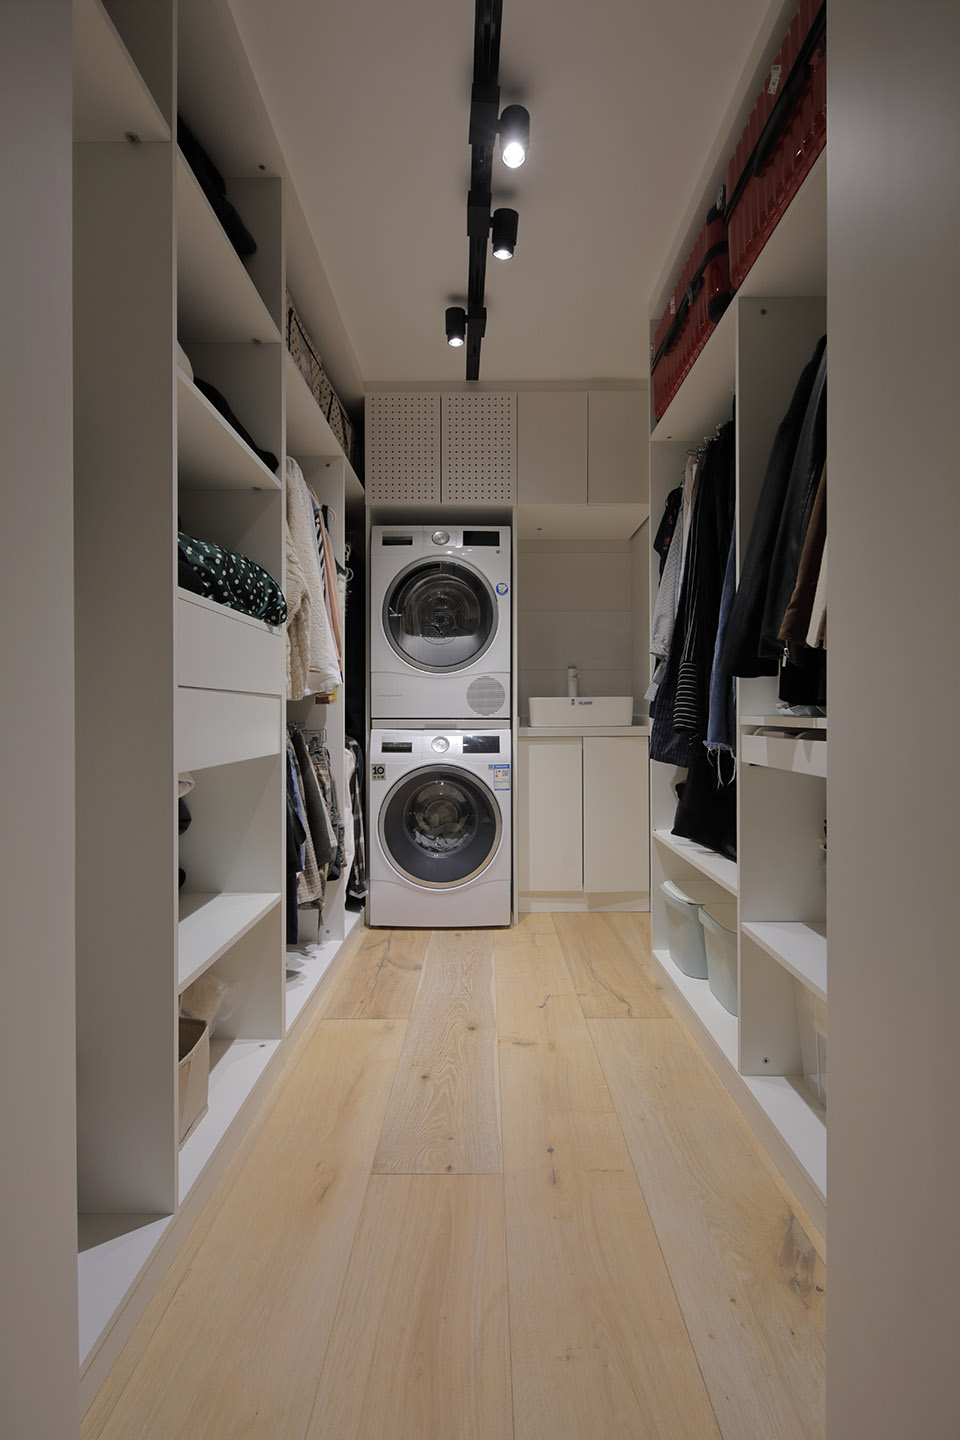 衣帽间内放置洗衣机，缩短了洗衣和拿衣之间的动线， 提高了生活效率。